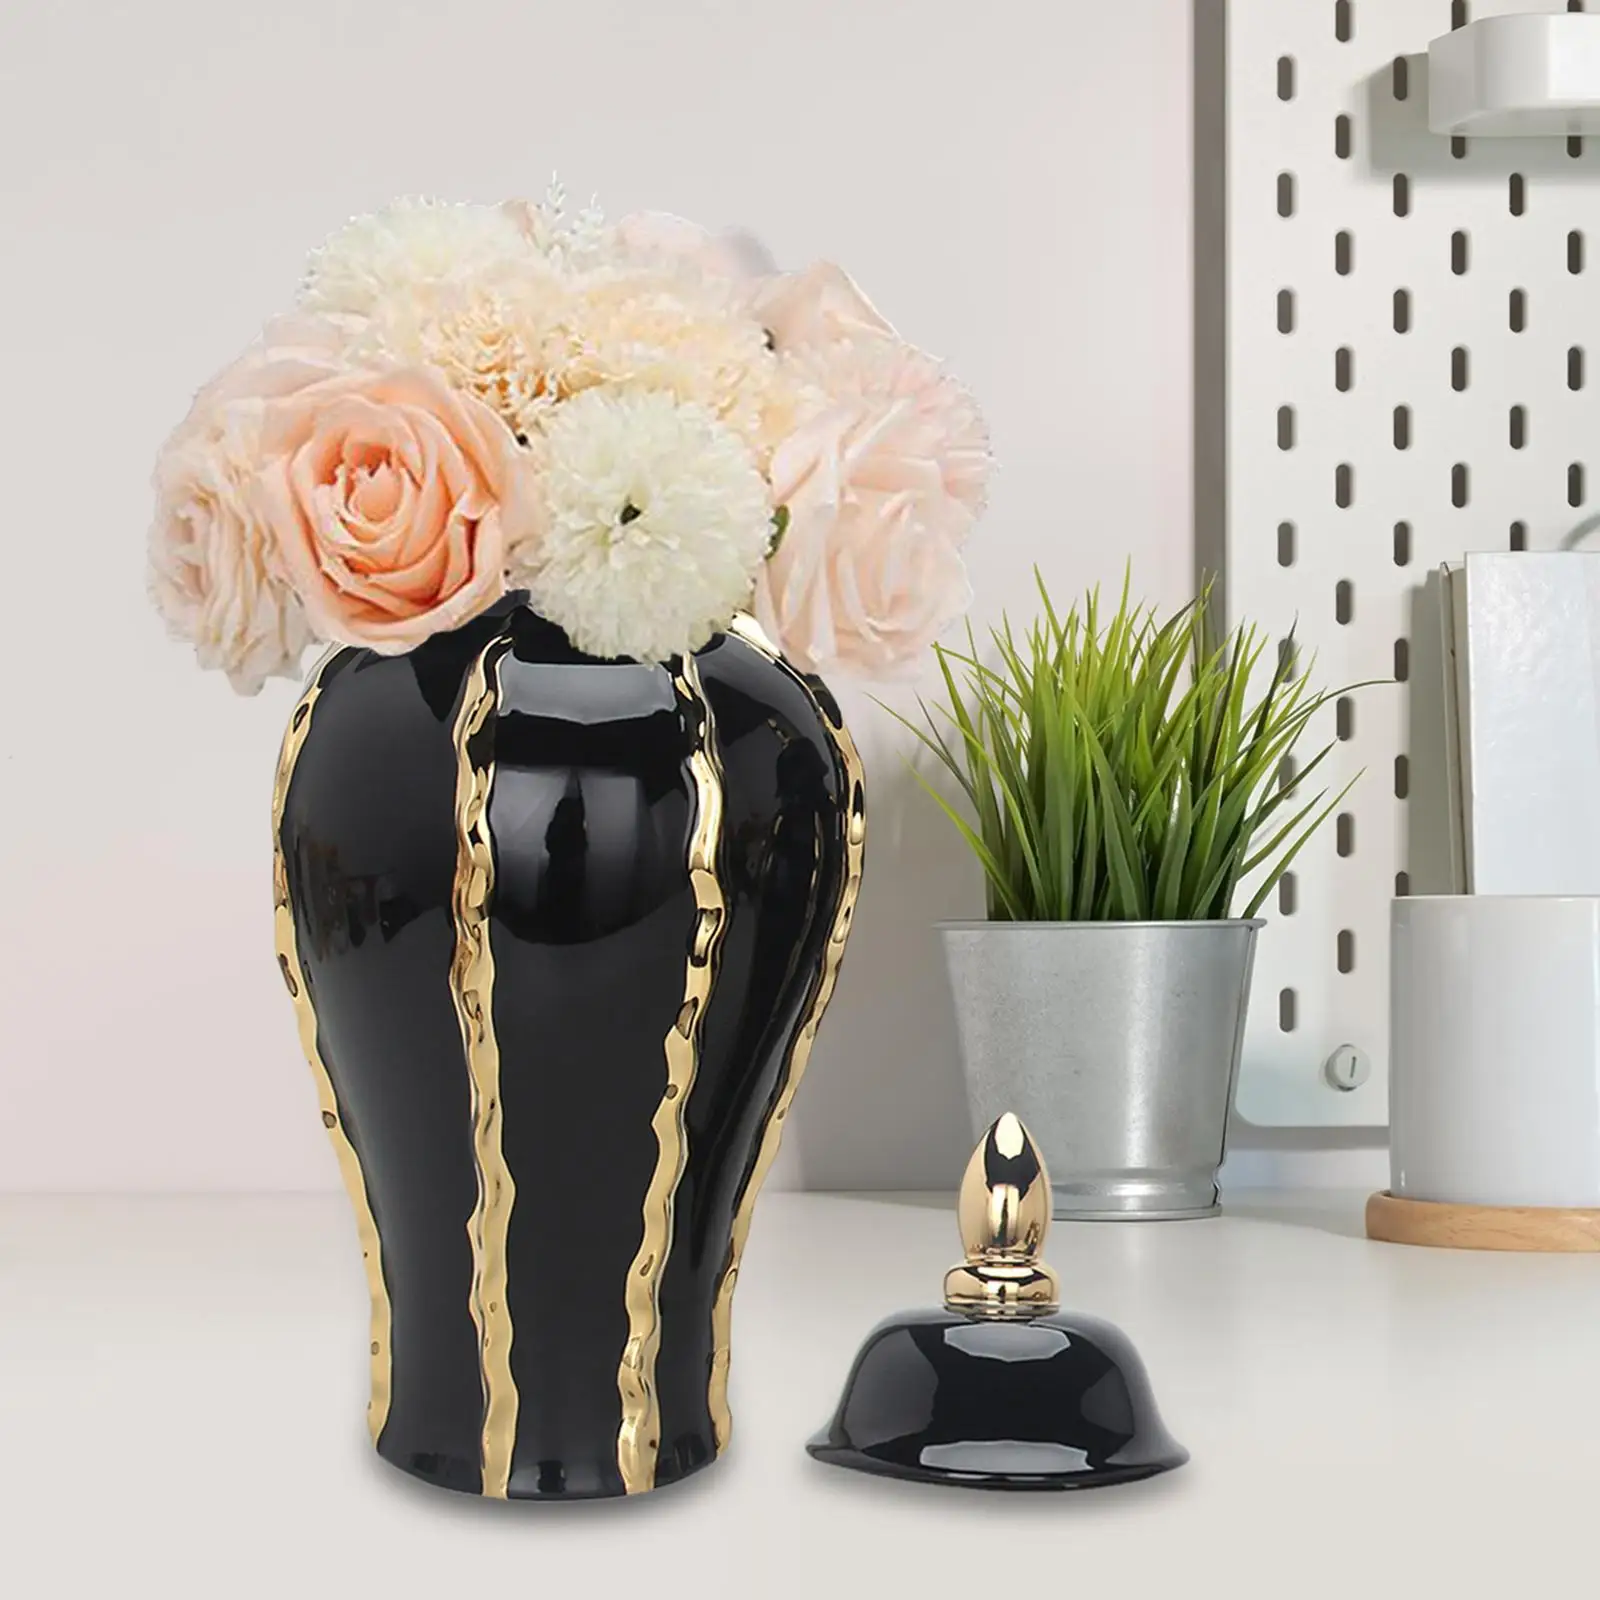 Porcelain Ginger Jar Table Centerpiece Storage Tank Ceramic Flower Vase Floral Arrangement Ornament for Living Room Decor Gift